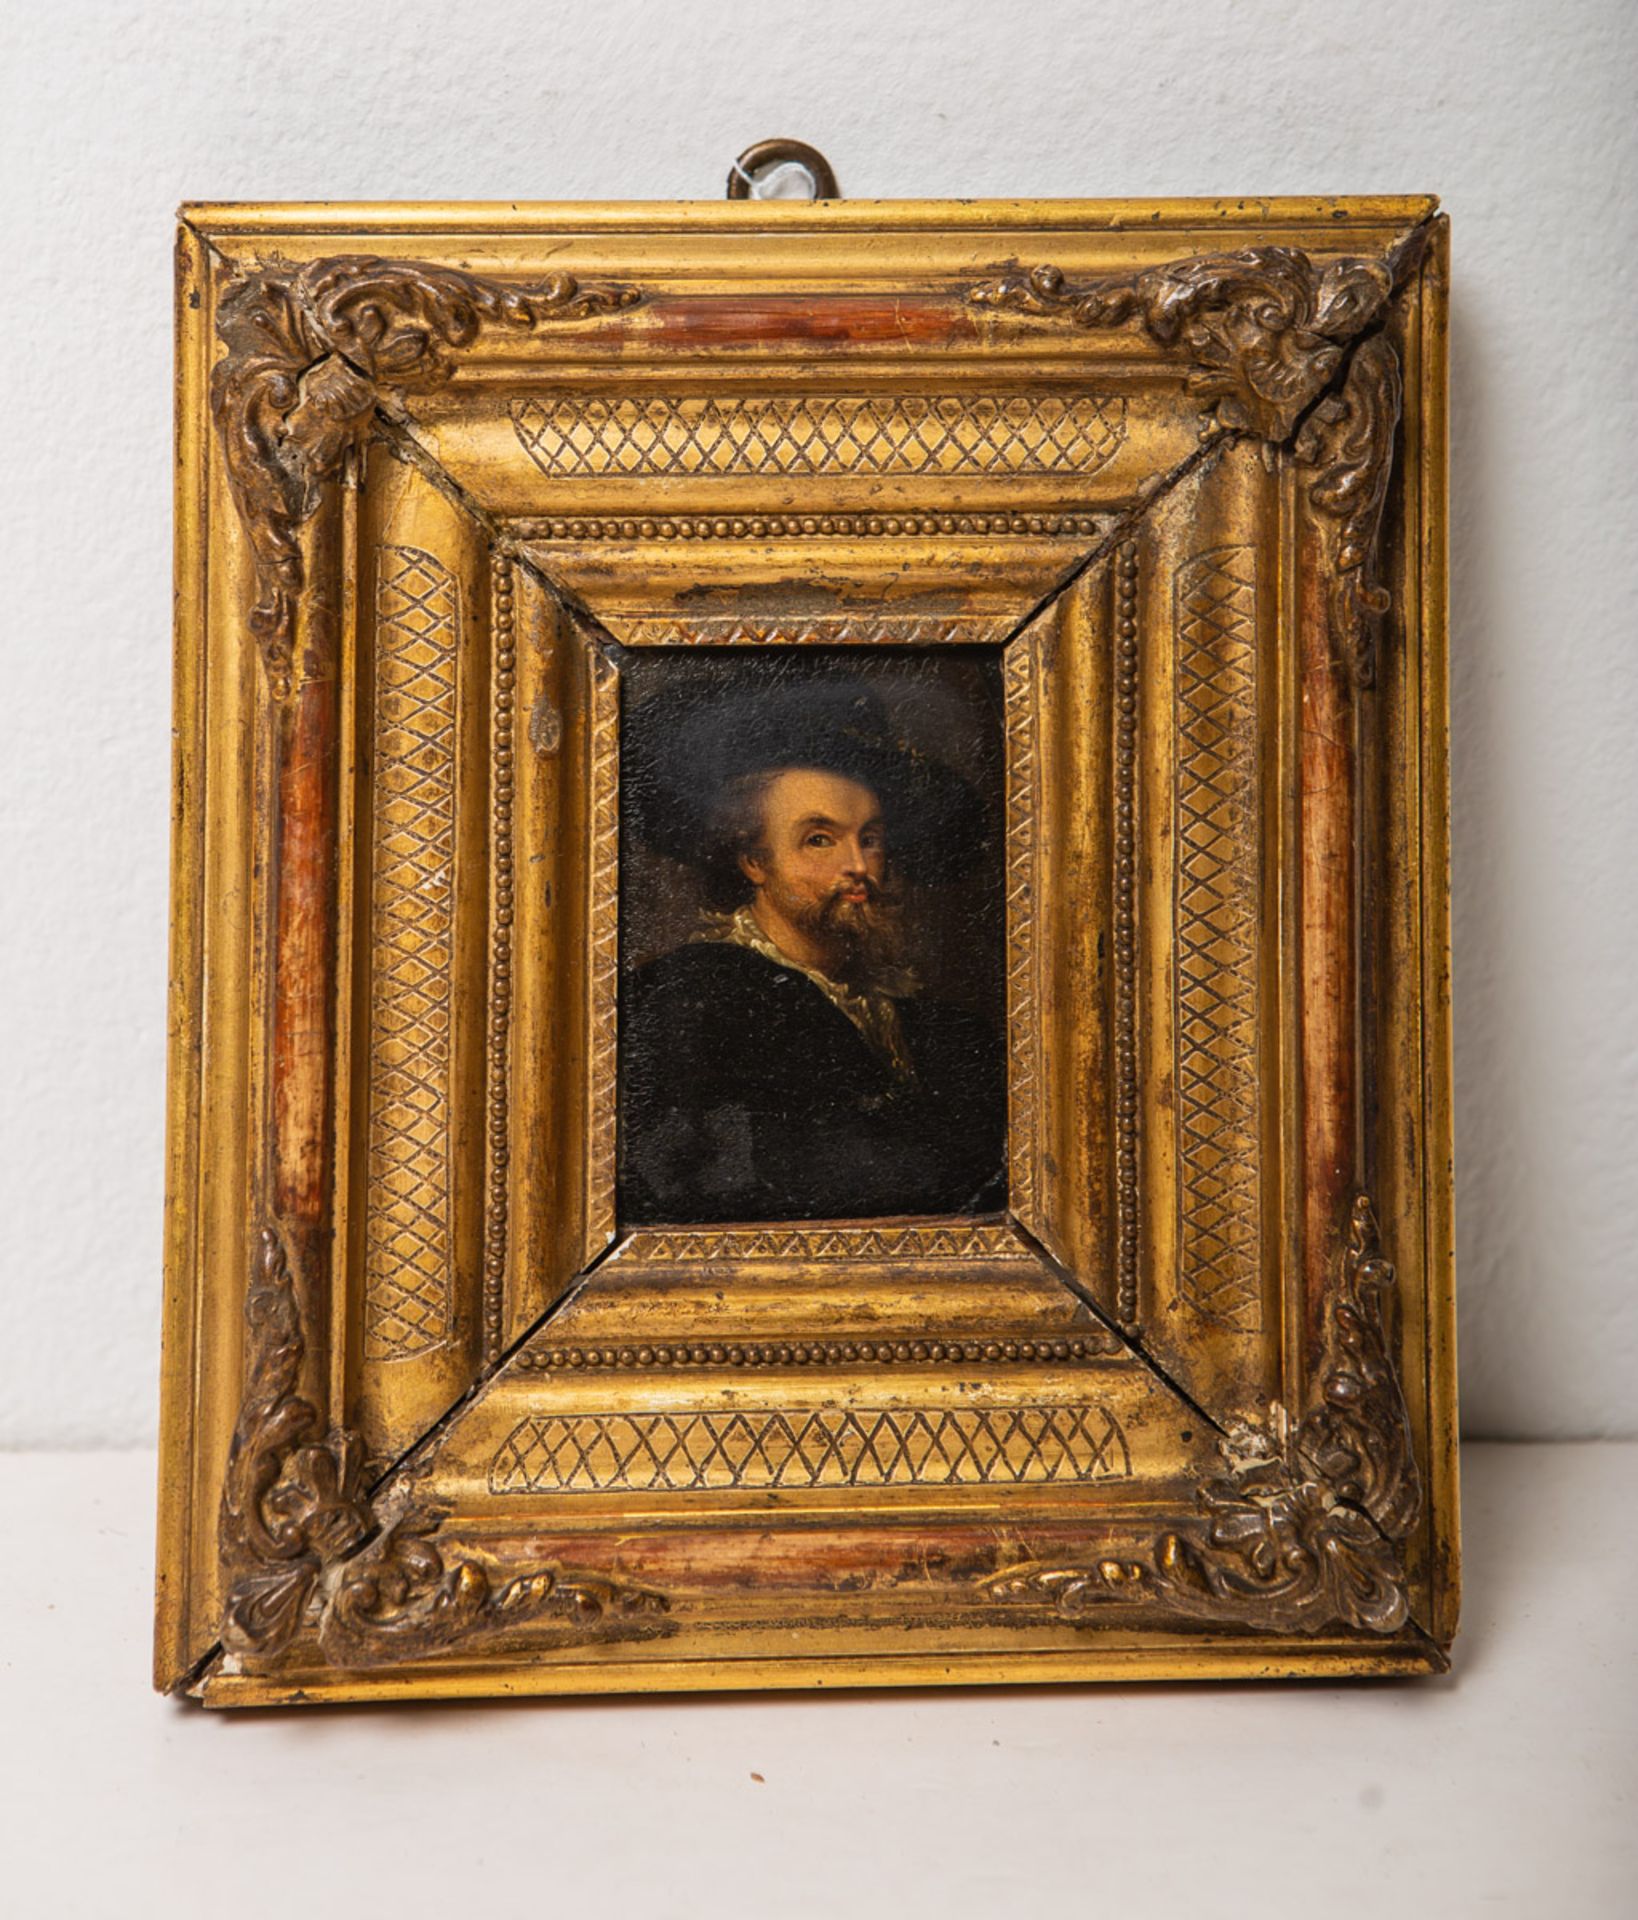 Künstler/in unbekannt (wohl 17. Jh.), "Miniaturportrait des P.P. Rubens"